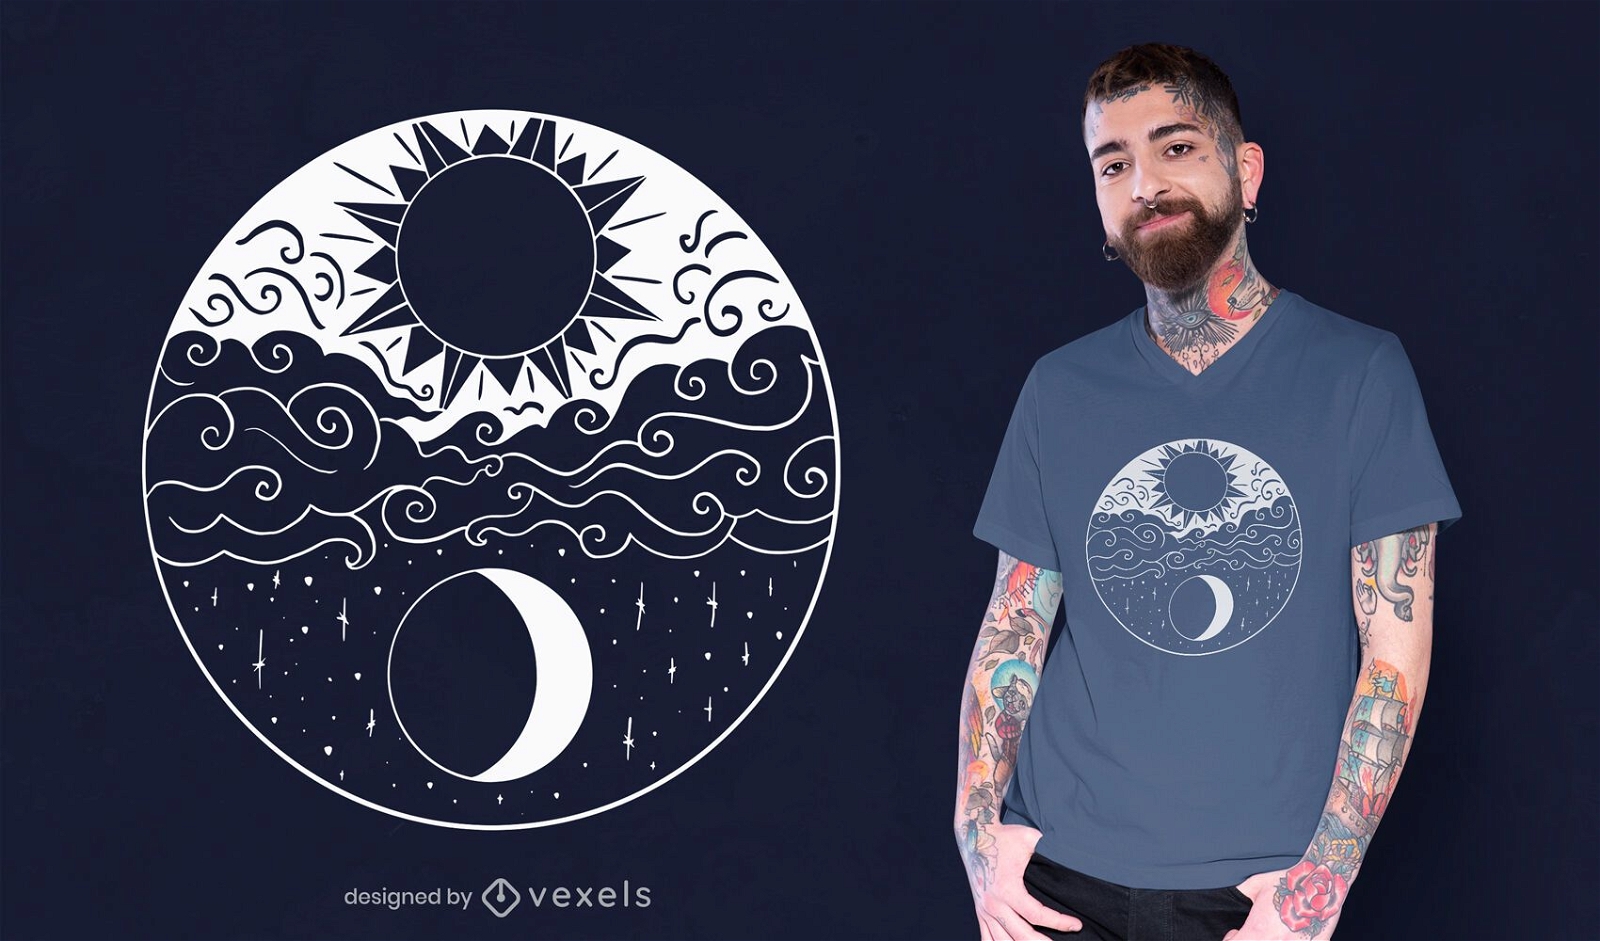 Dise?o art?stico de camiseta sol y luna.